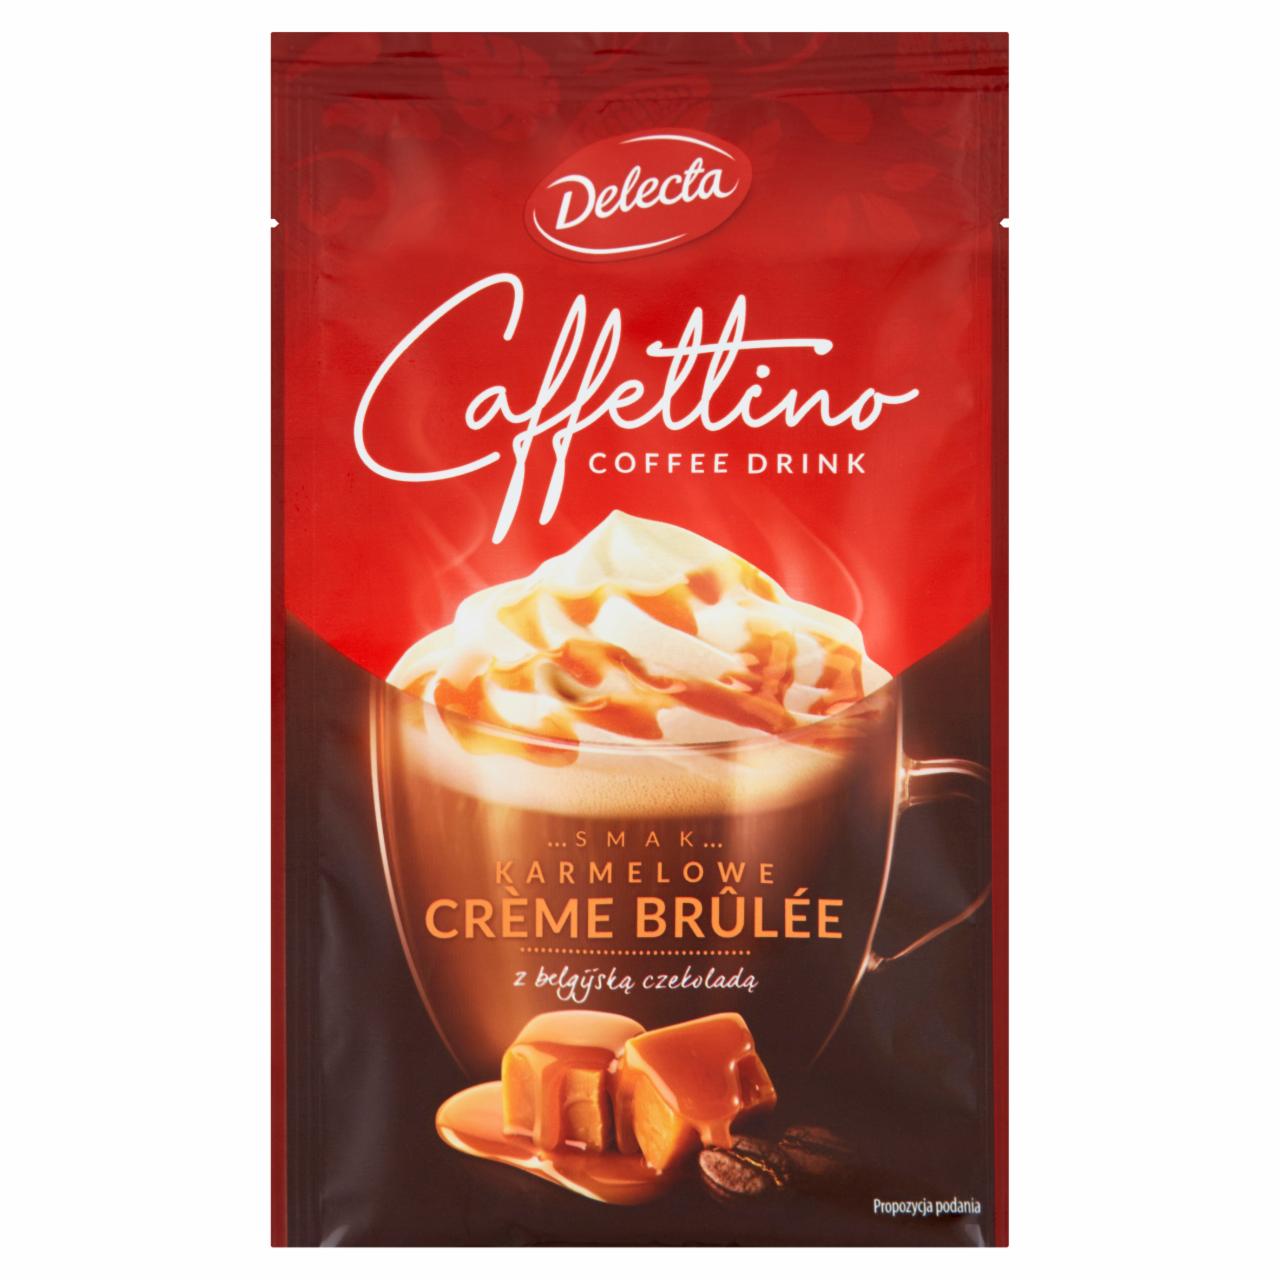 Zdjęcia - Delecta Caffettino Napój czekoladowo-kawowy w proszku smak karmelowe crème brûlée 22 g